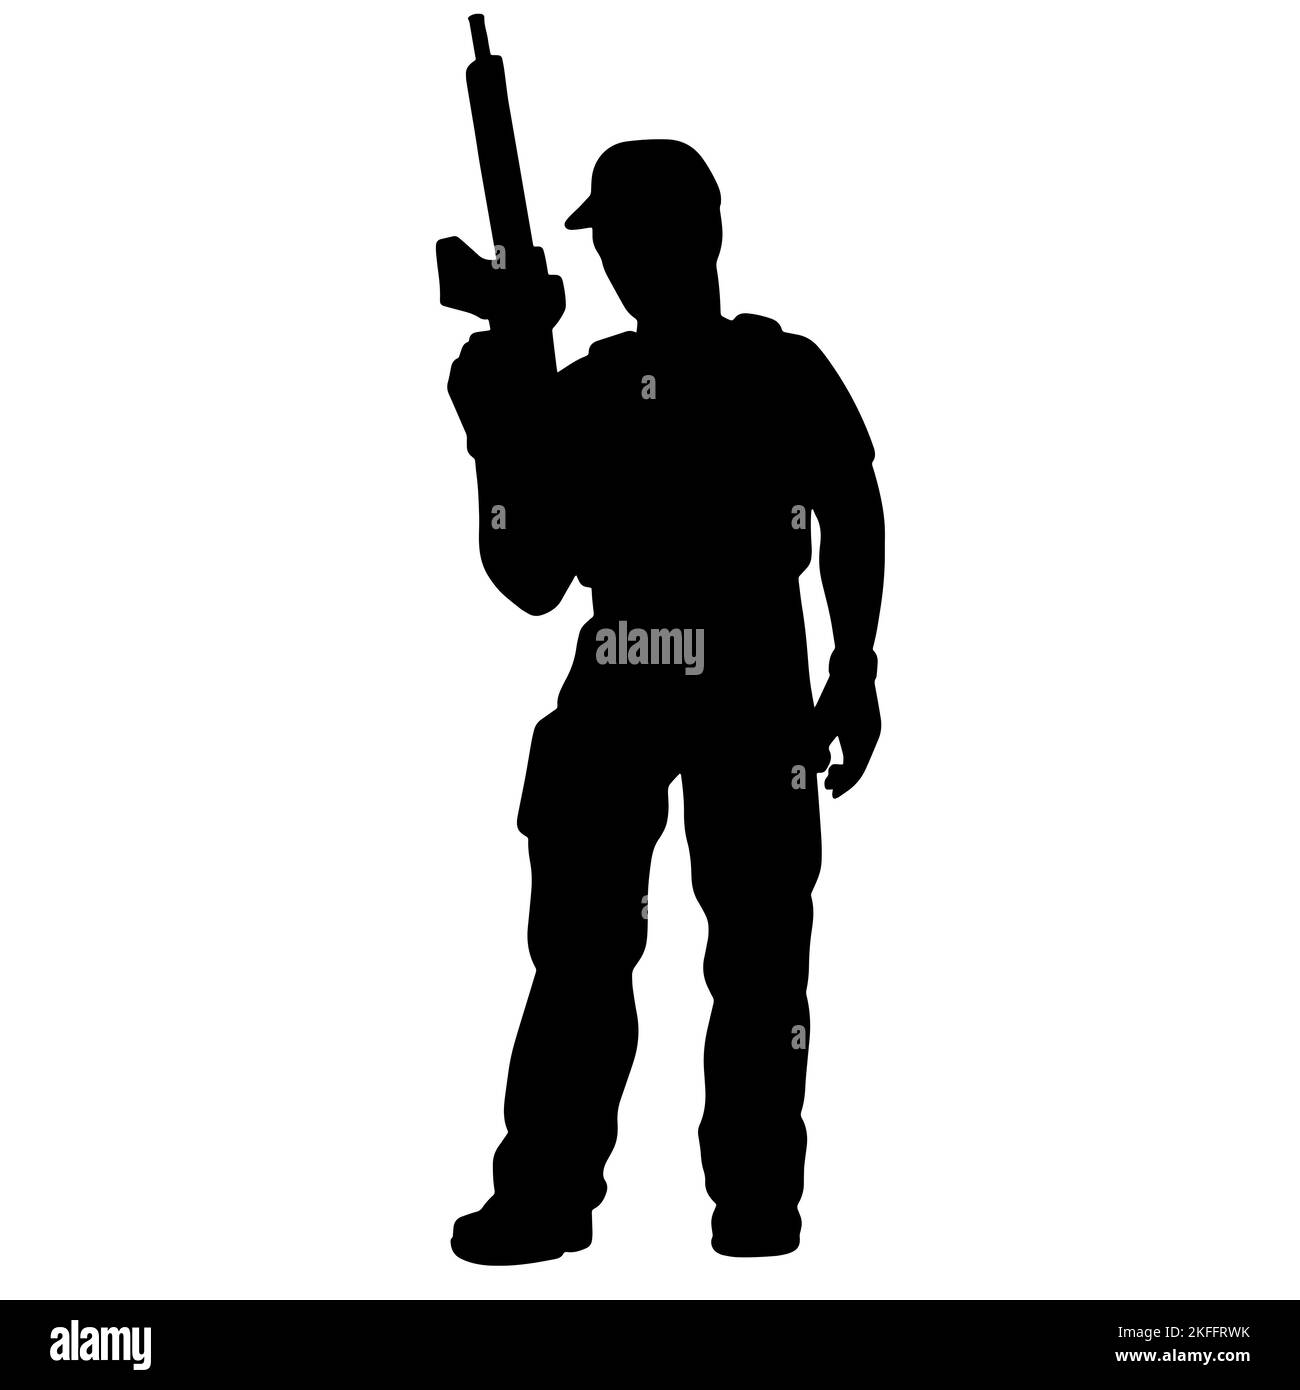 Silhouette noire et blanche d'un soldat avec une arme. Un soldat des forces spéciales vise et tire un fusil ou une mitrailleuse à l'ennemi Banque D'Images